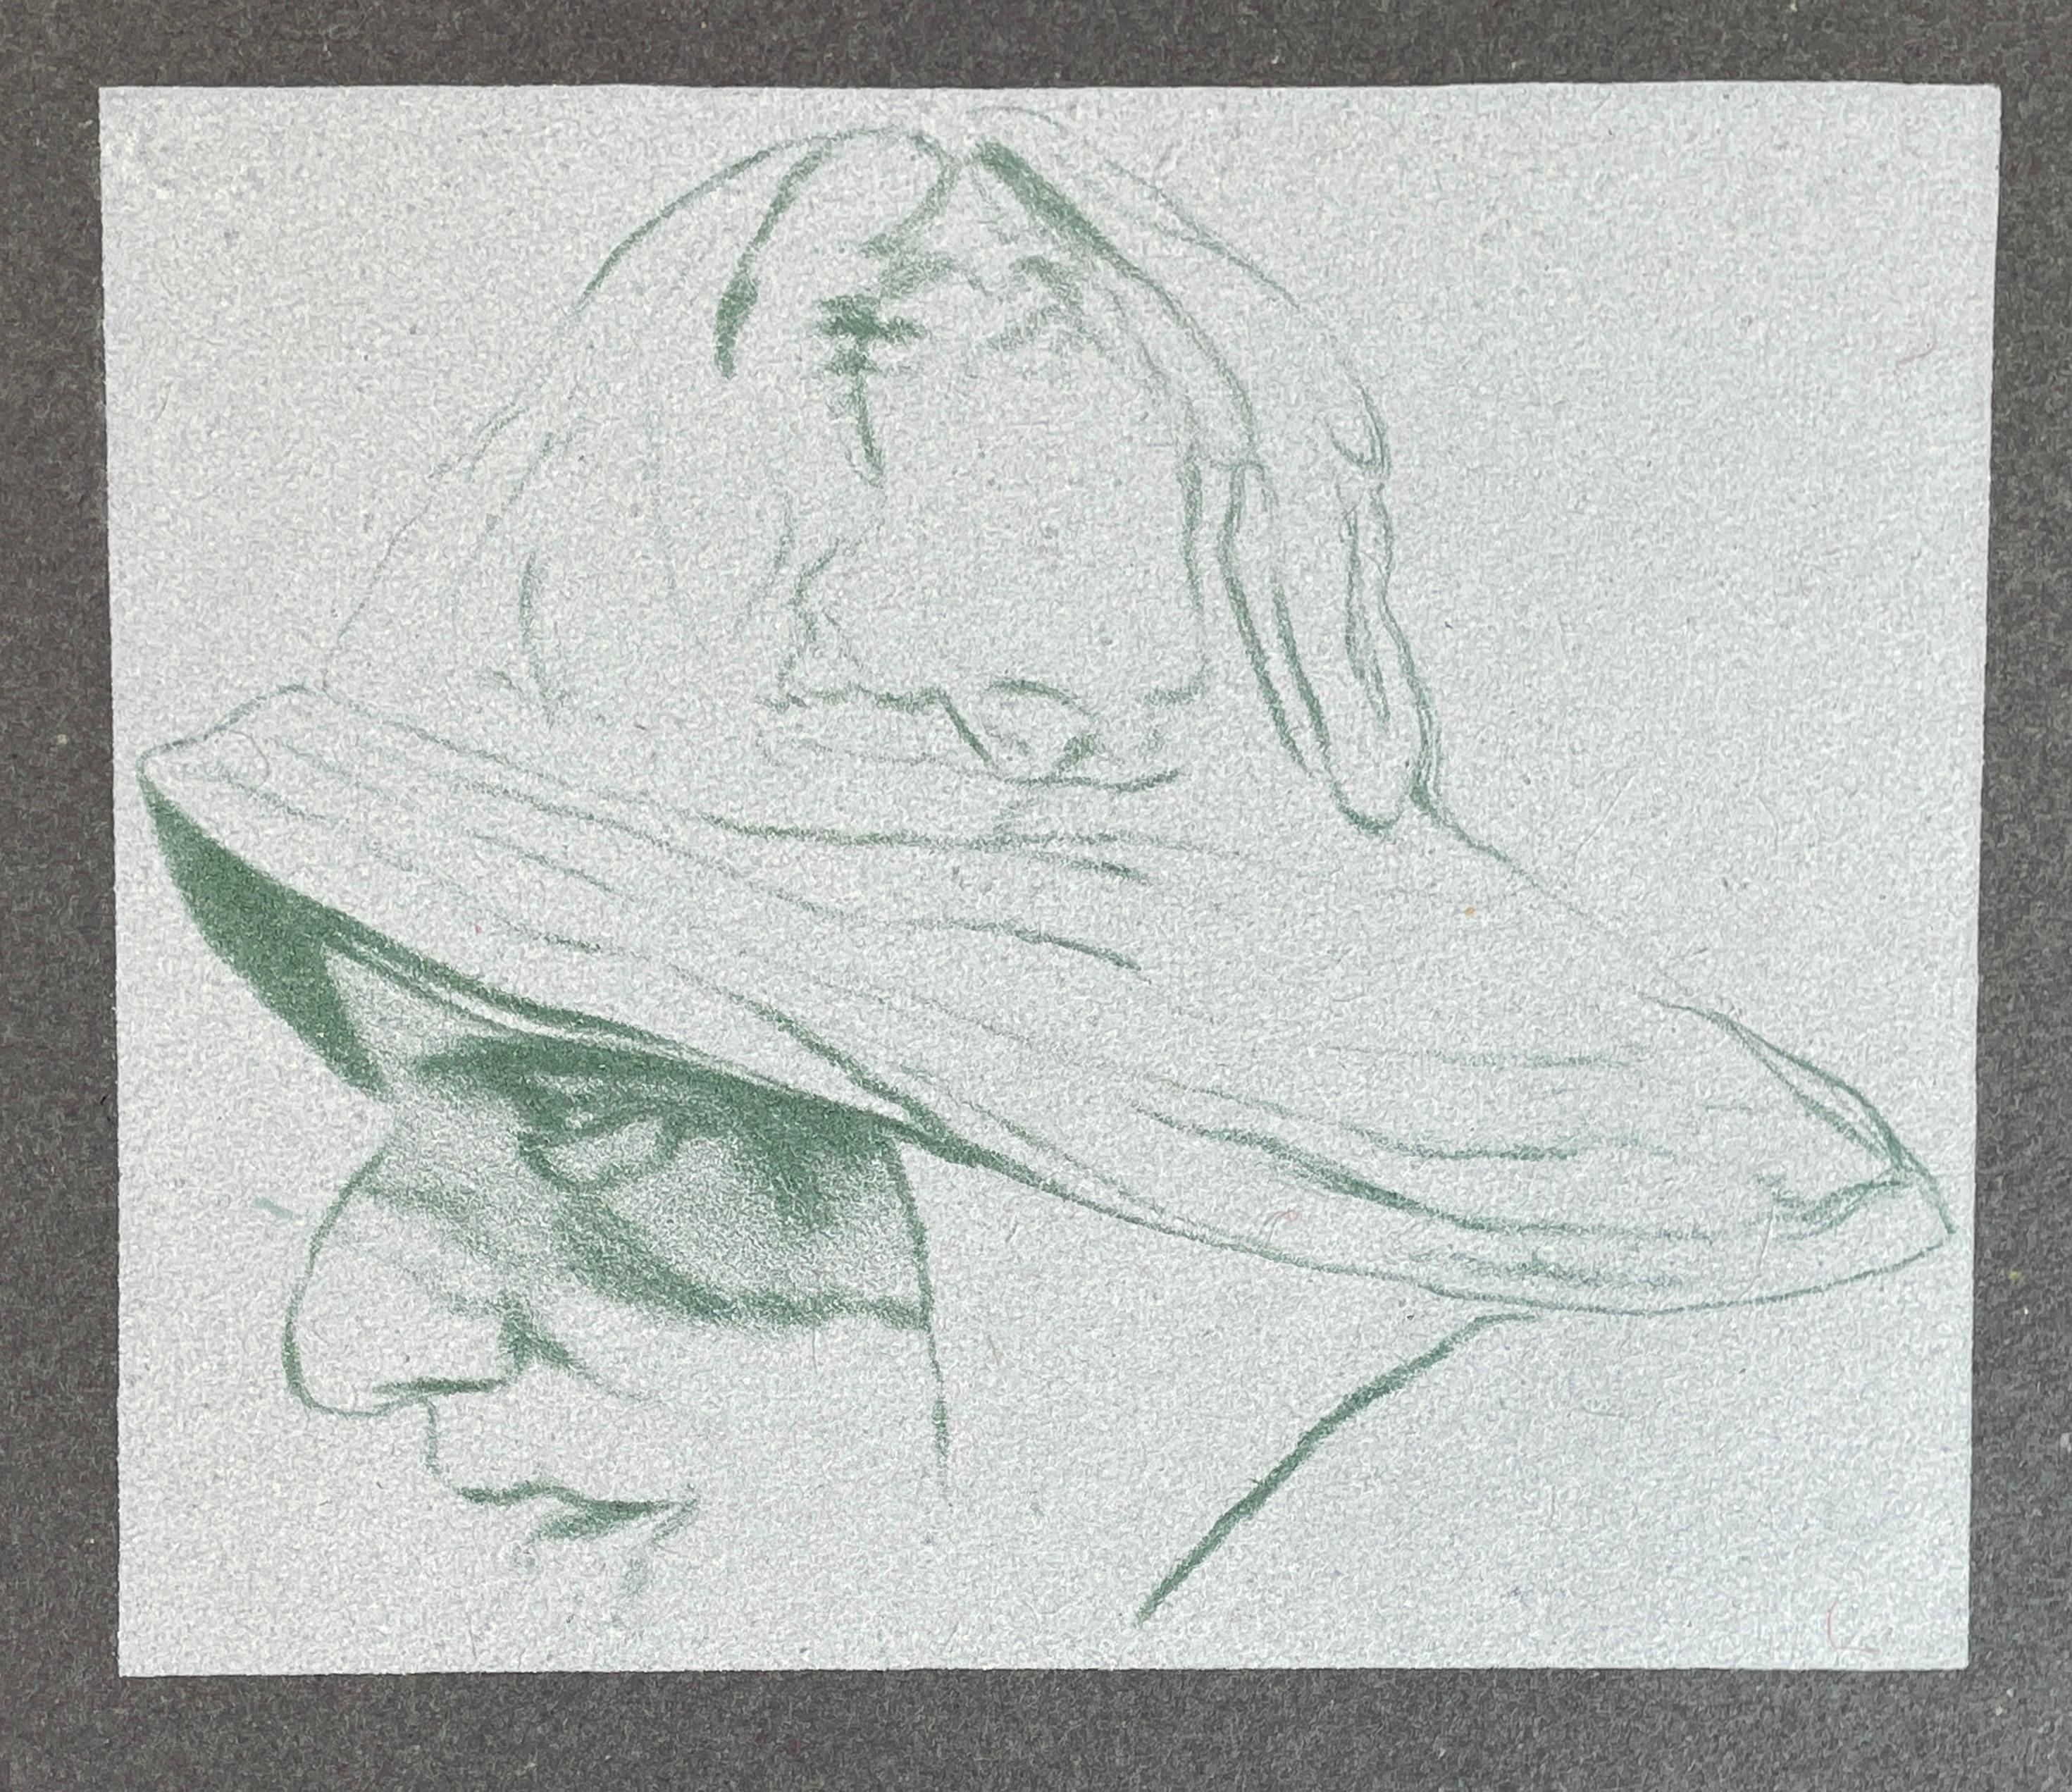 Cap'n A.B Dick (A) gray fisherman portrait sou'wester hat R.B. Kitaj lithograph